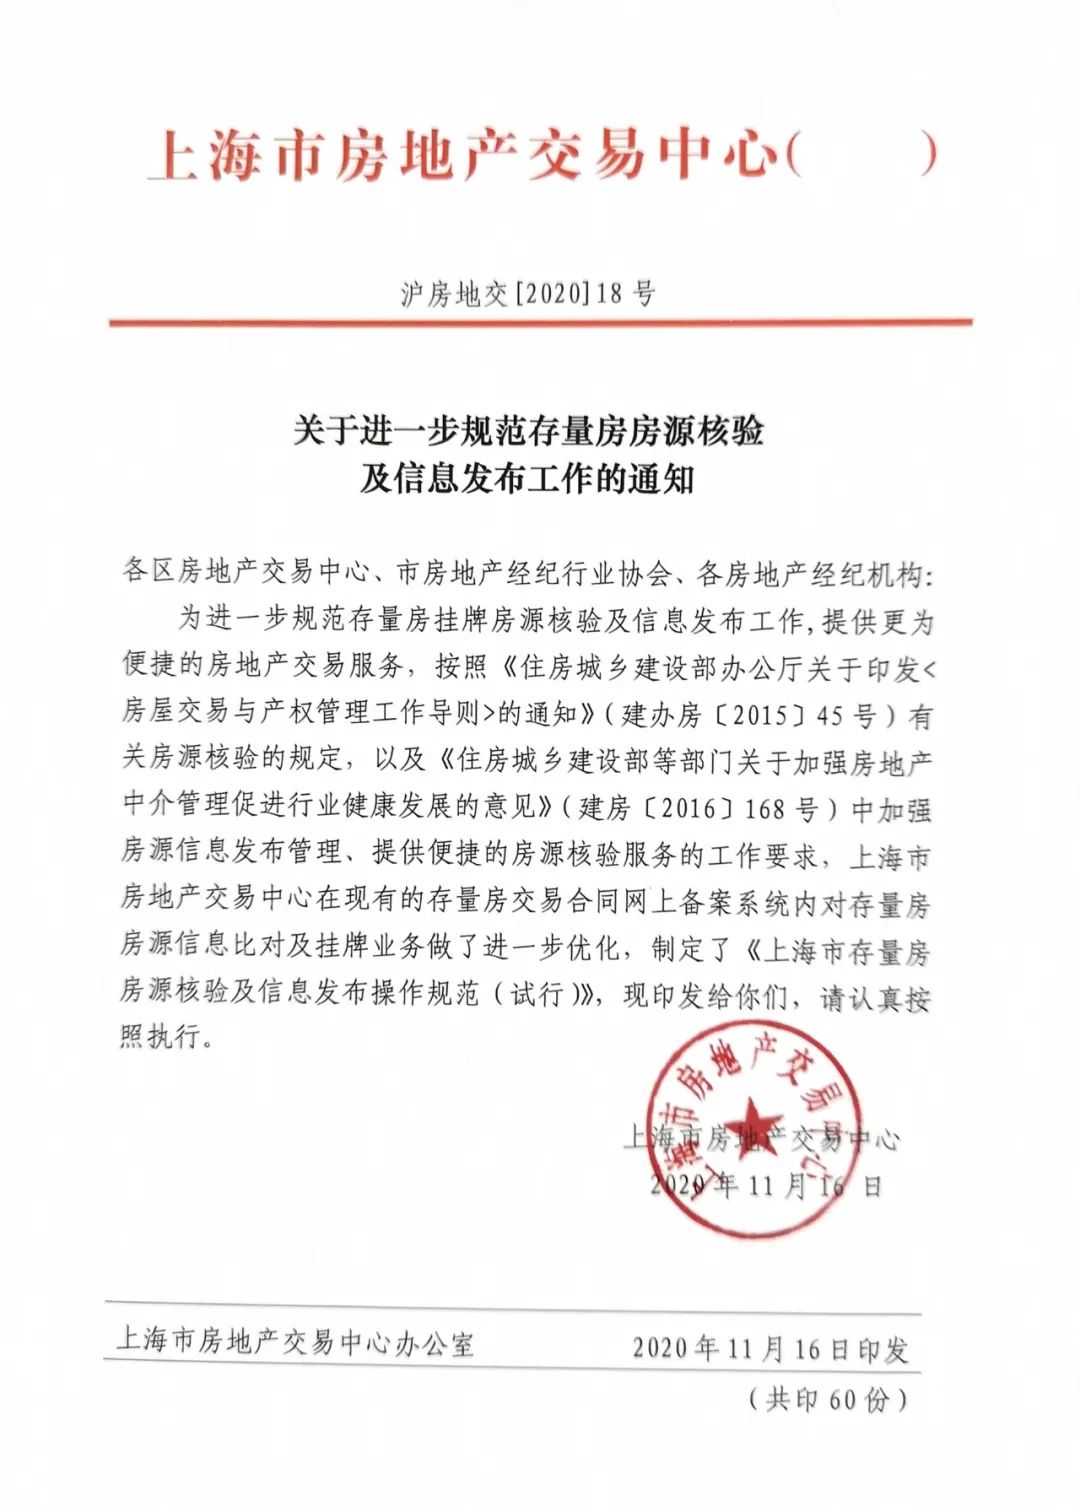 上海严格规范二手房挂牌信息：链家将万套房源暂时性下架